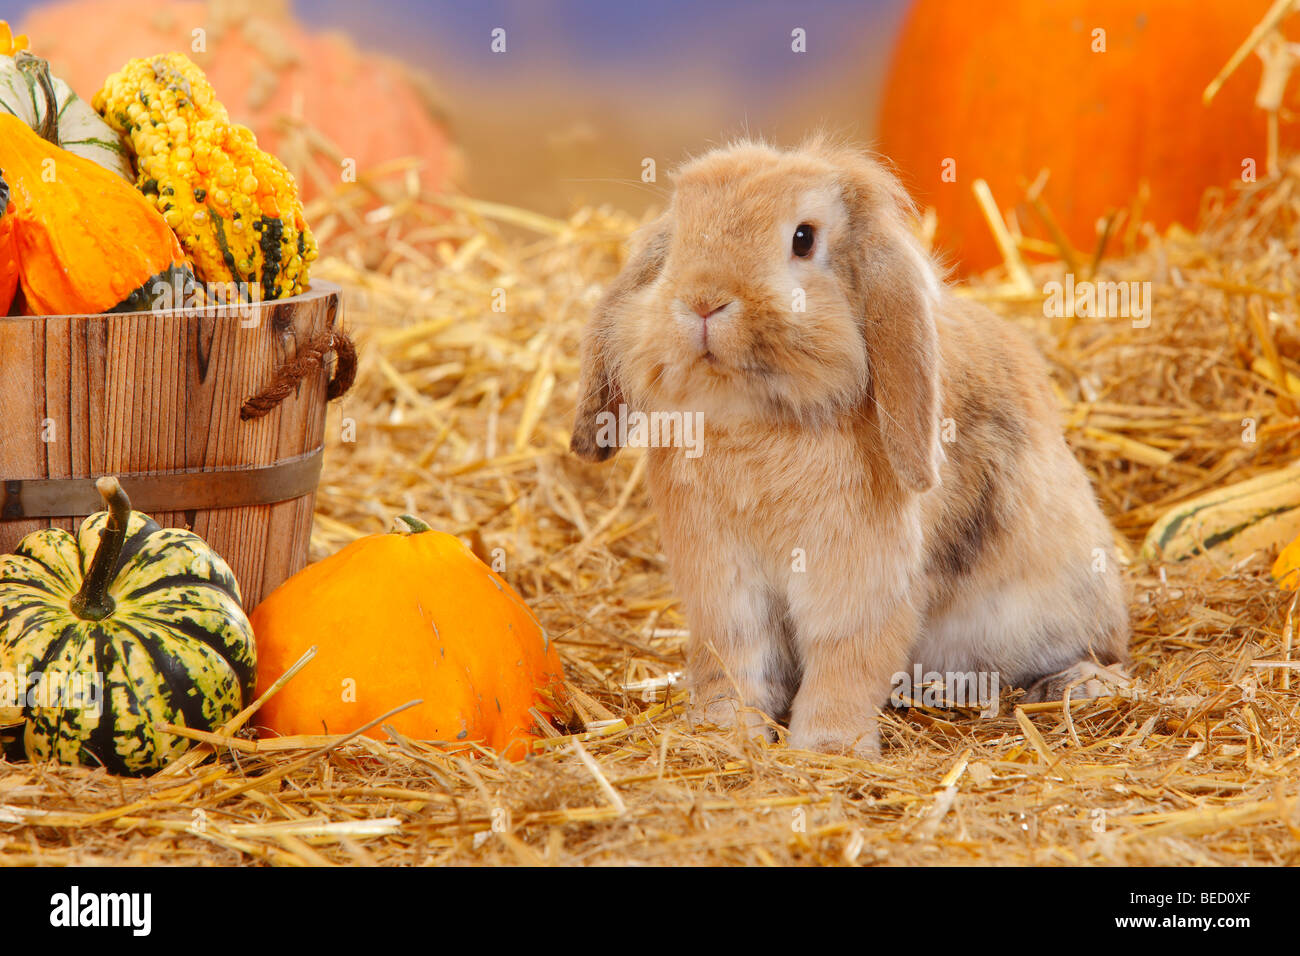 Lop-eared Dwarf Rabbit / Domestic Rabbit, straw Stock Photo